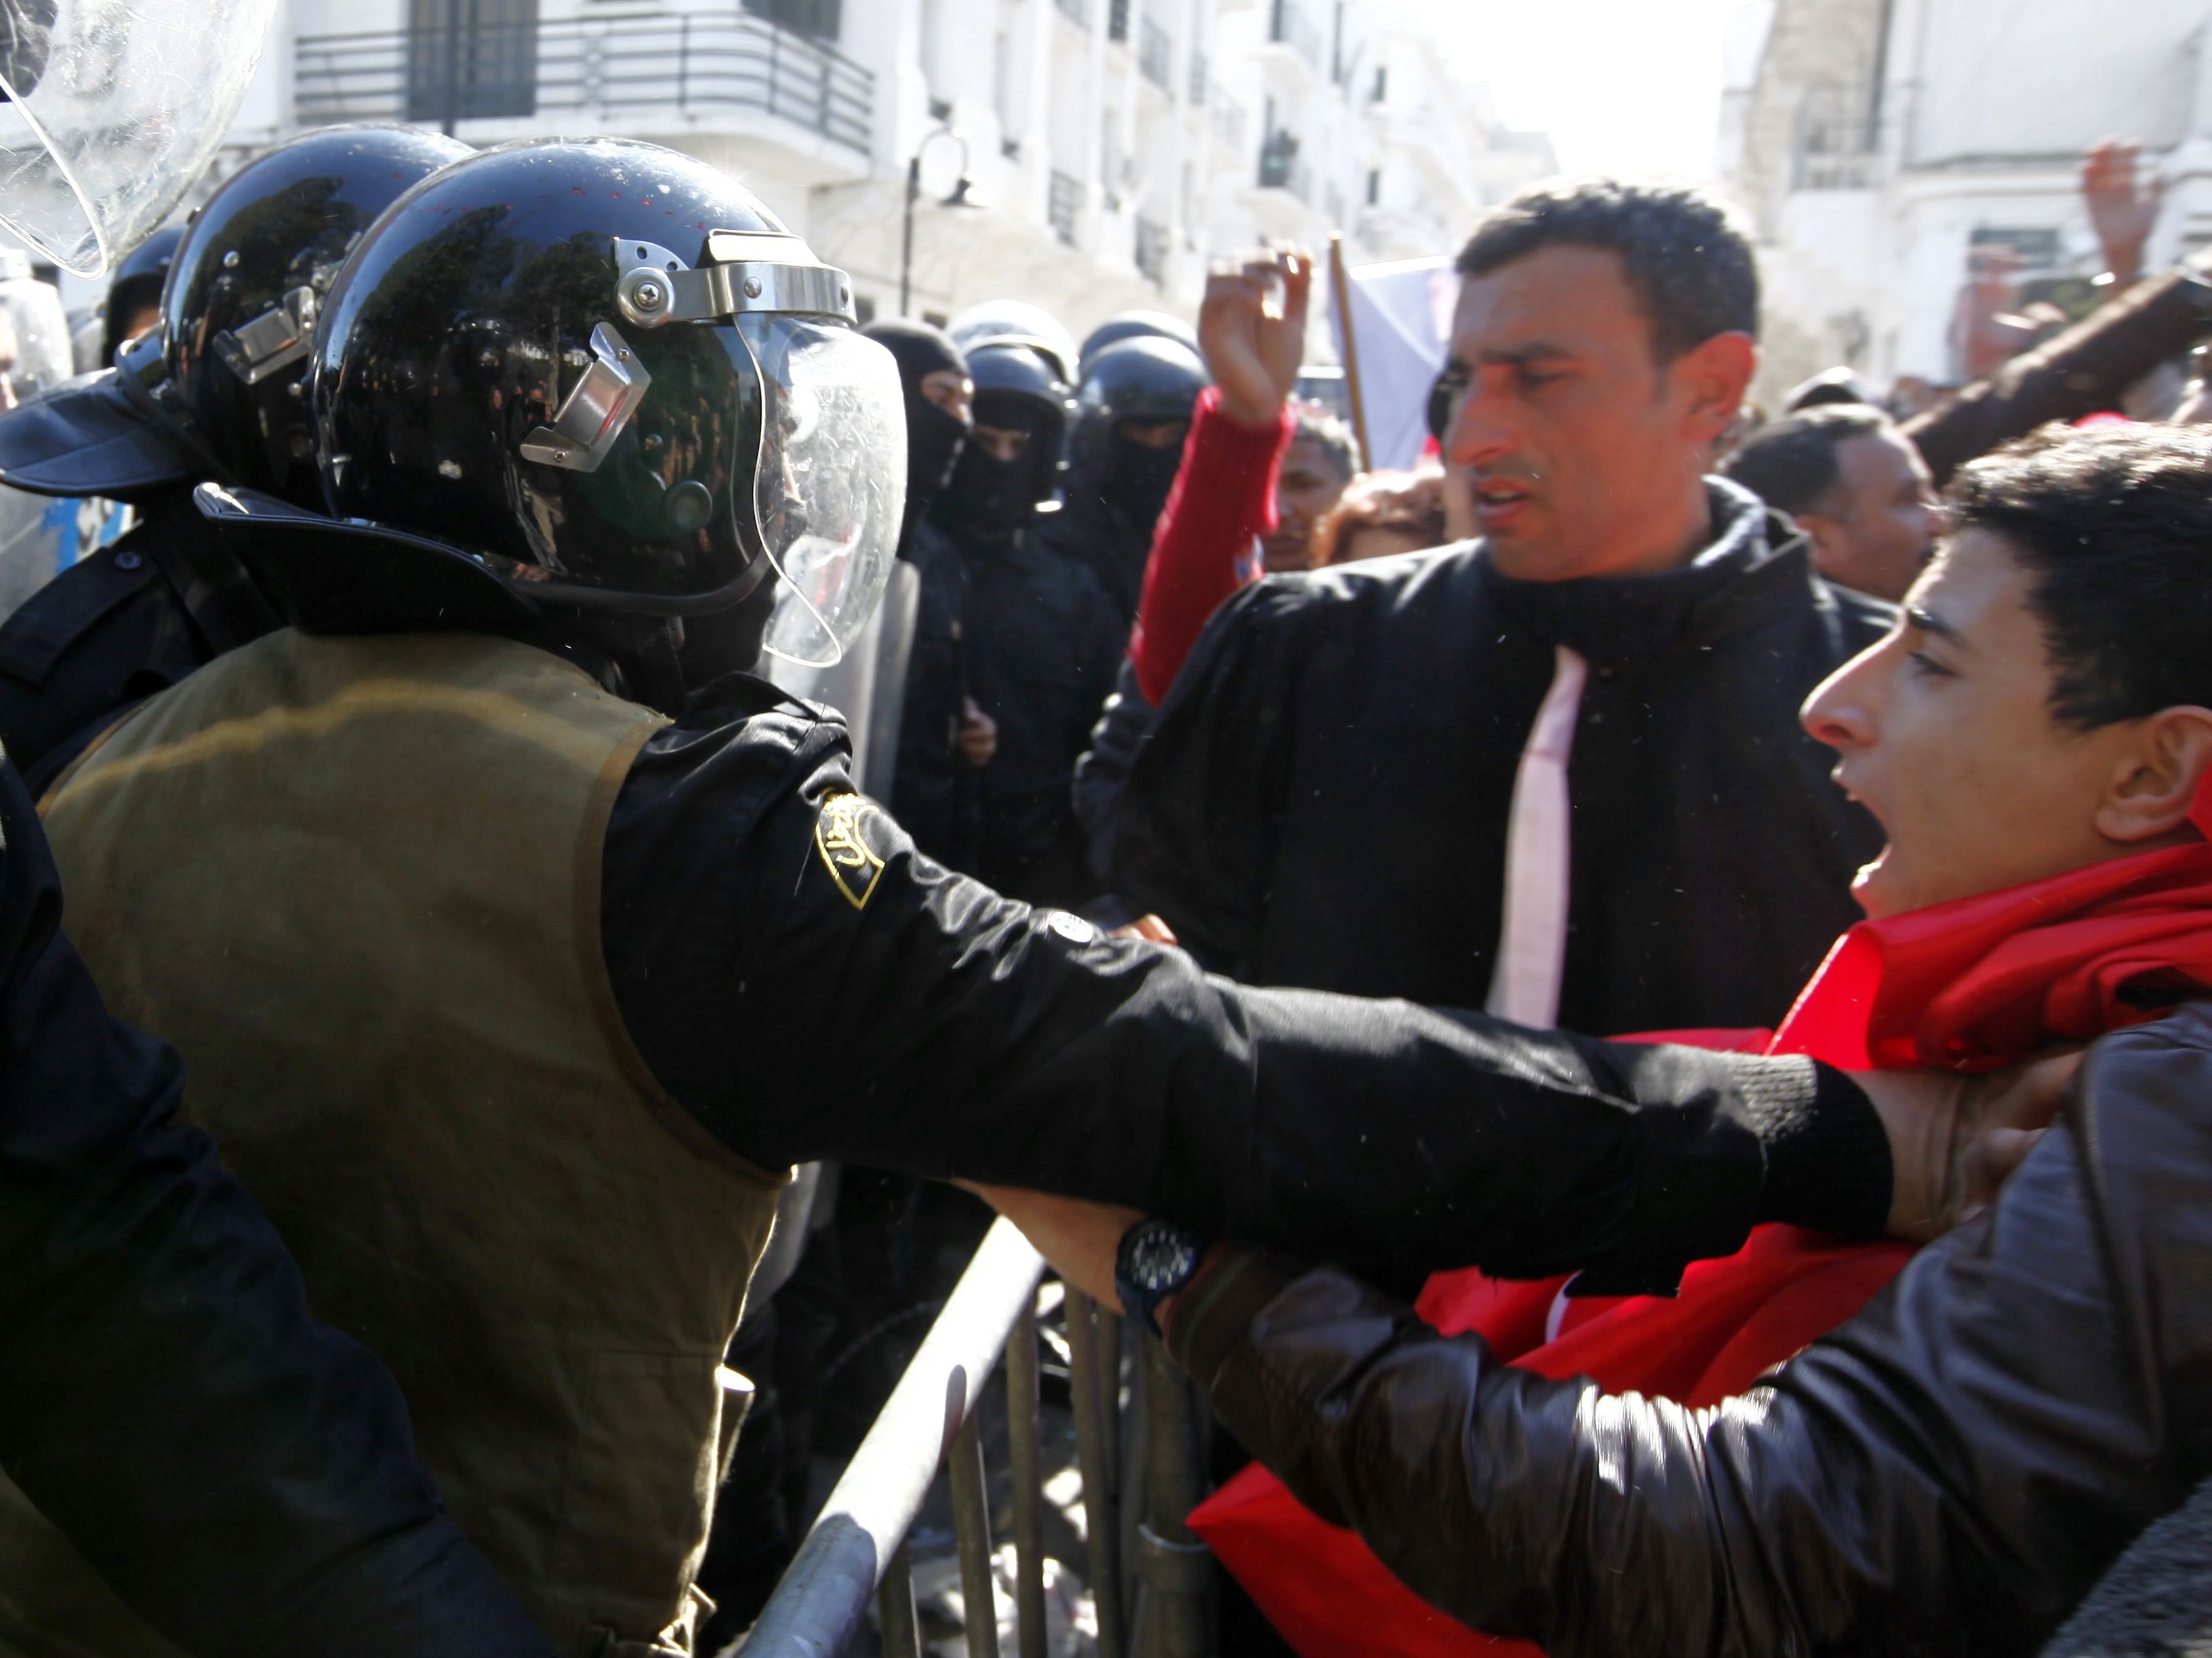 Los manifestantes tunecinos se enfrentan a la policía antidisturbios durante una manifestación después de la muerte del líder de la oposición tunecina Chokri Belaid, frente al Ministerio del Interior en Túnez el 06 de febrero 2013